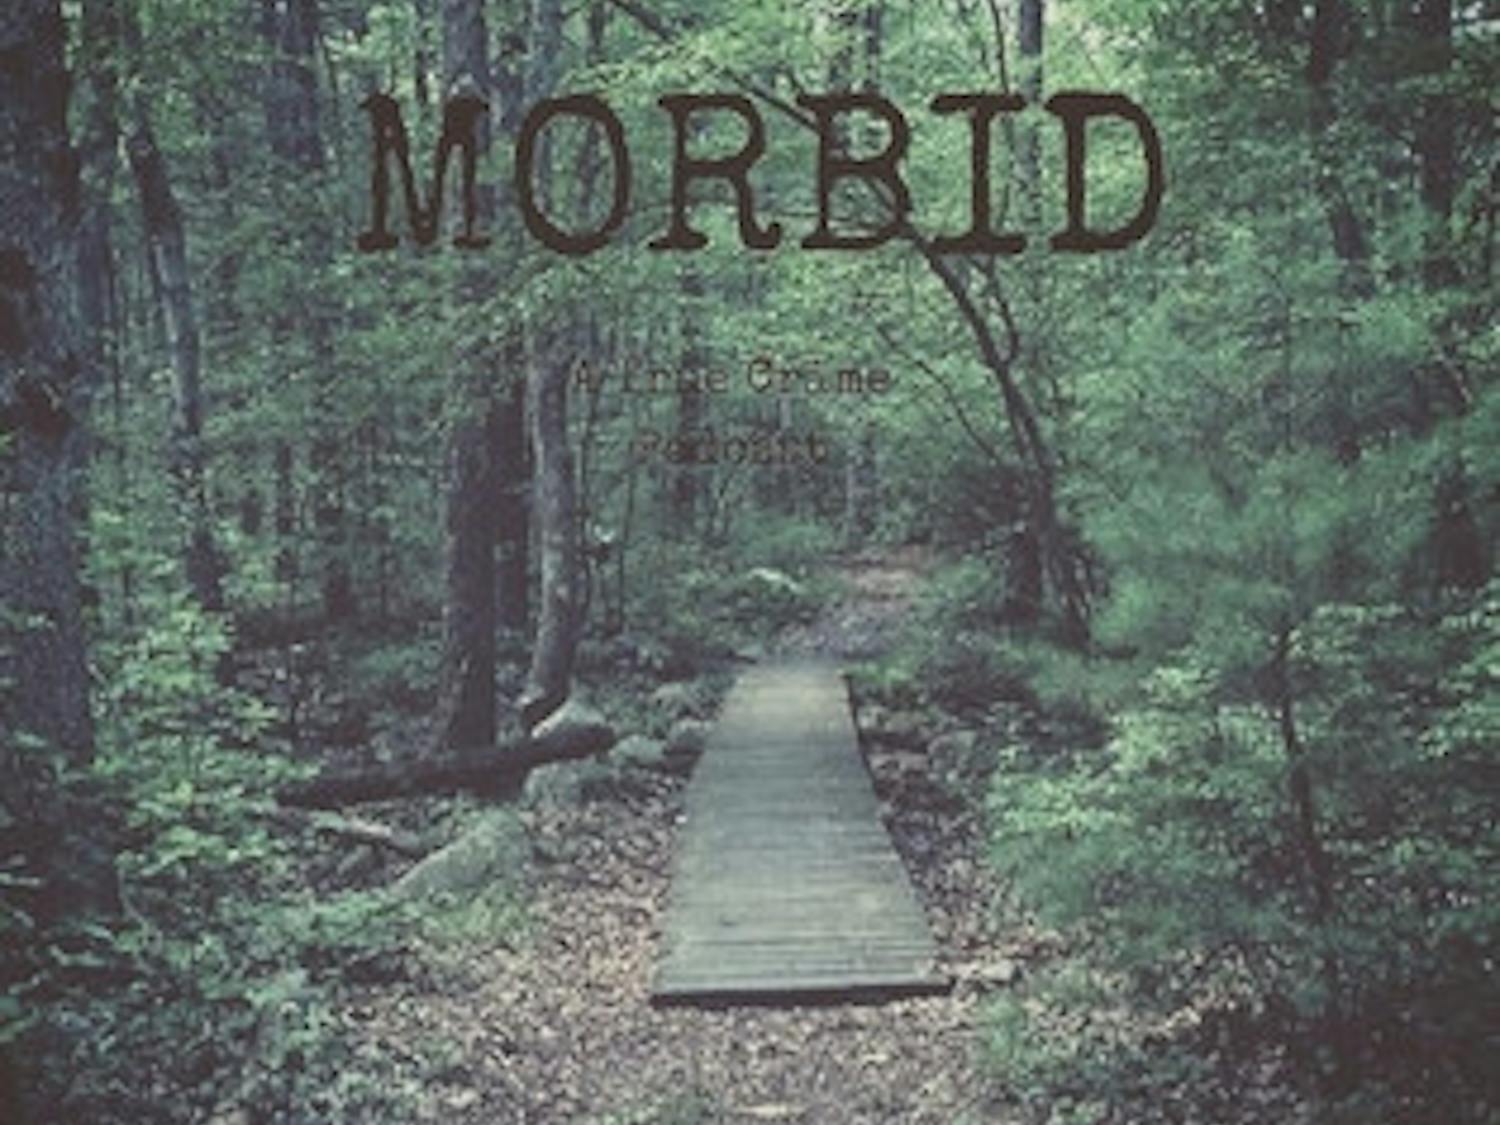 Morbid_podcast_logo